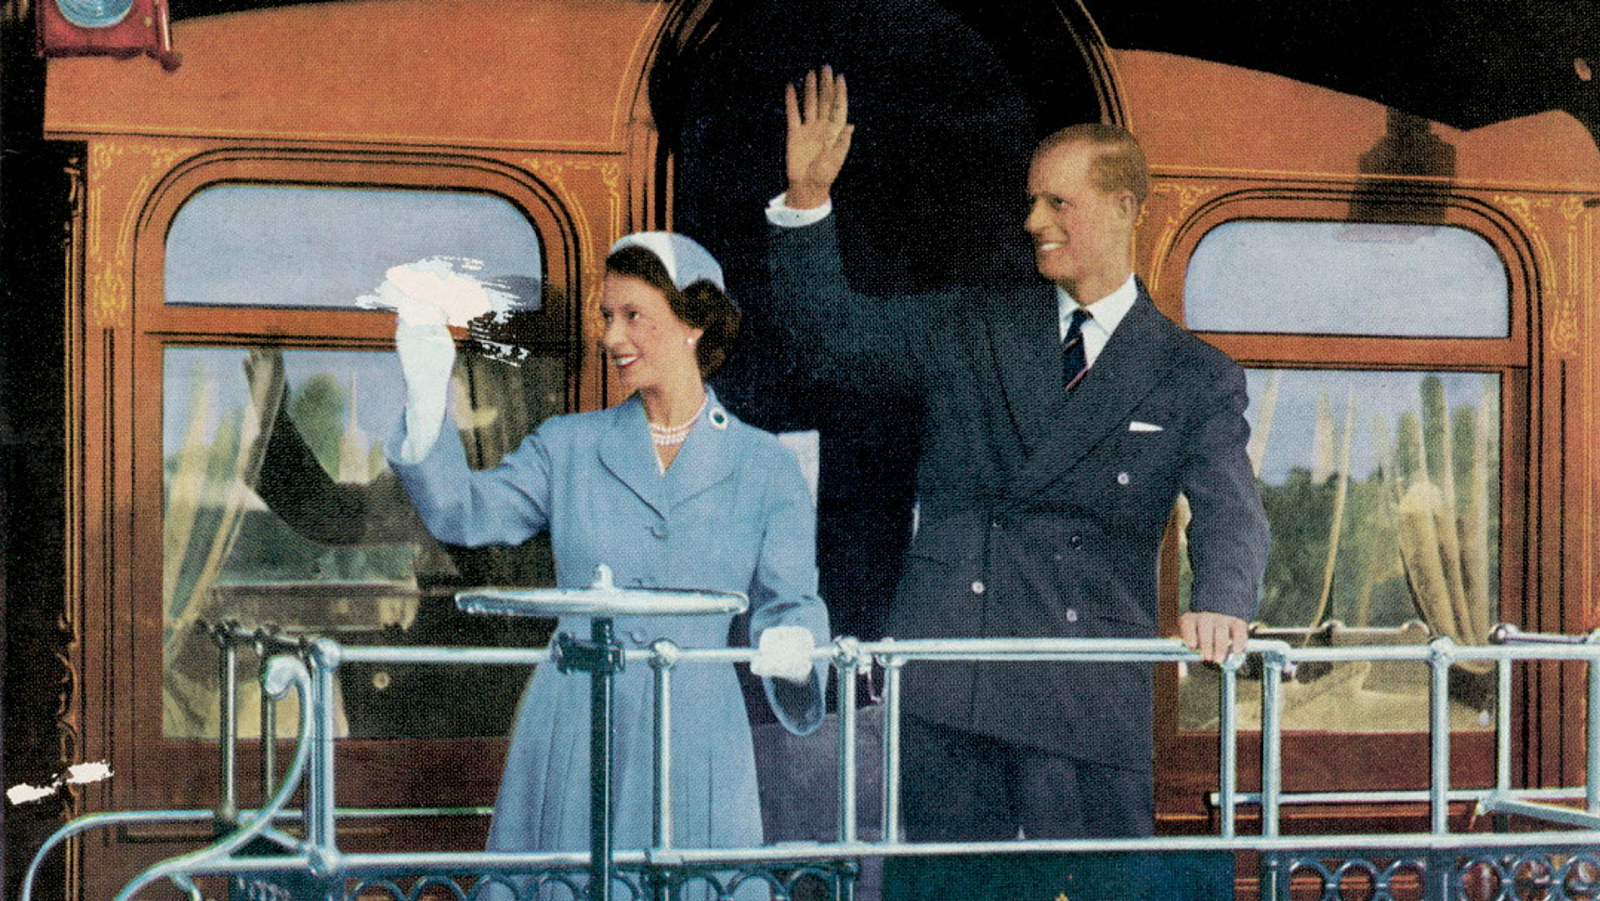 3 Feb 1954 - Australian visit by Queen Elizabeth II | NSW State Archives